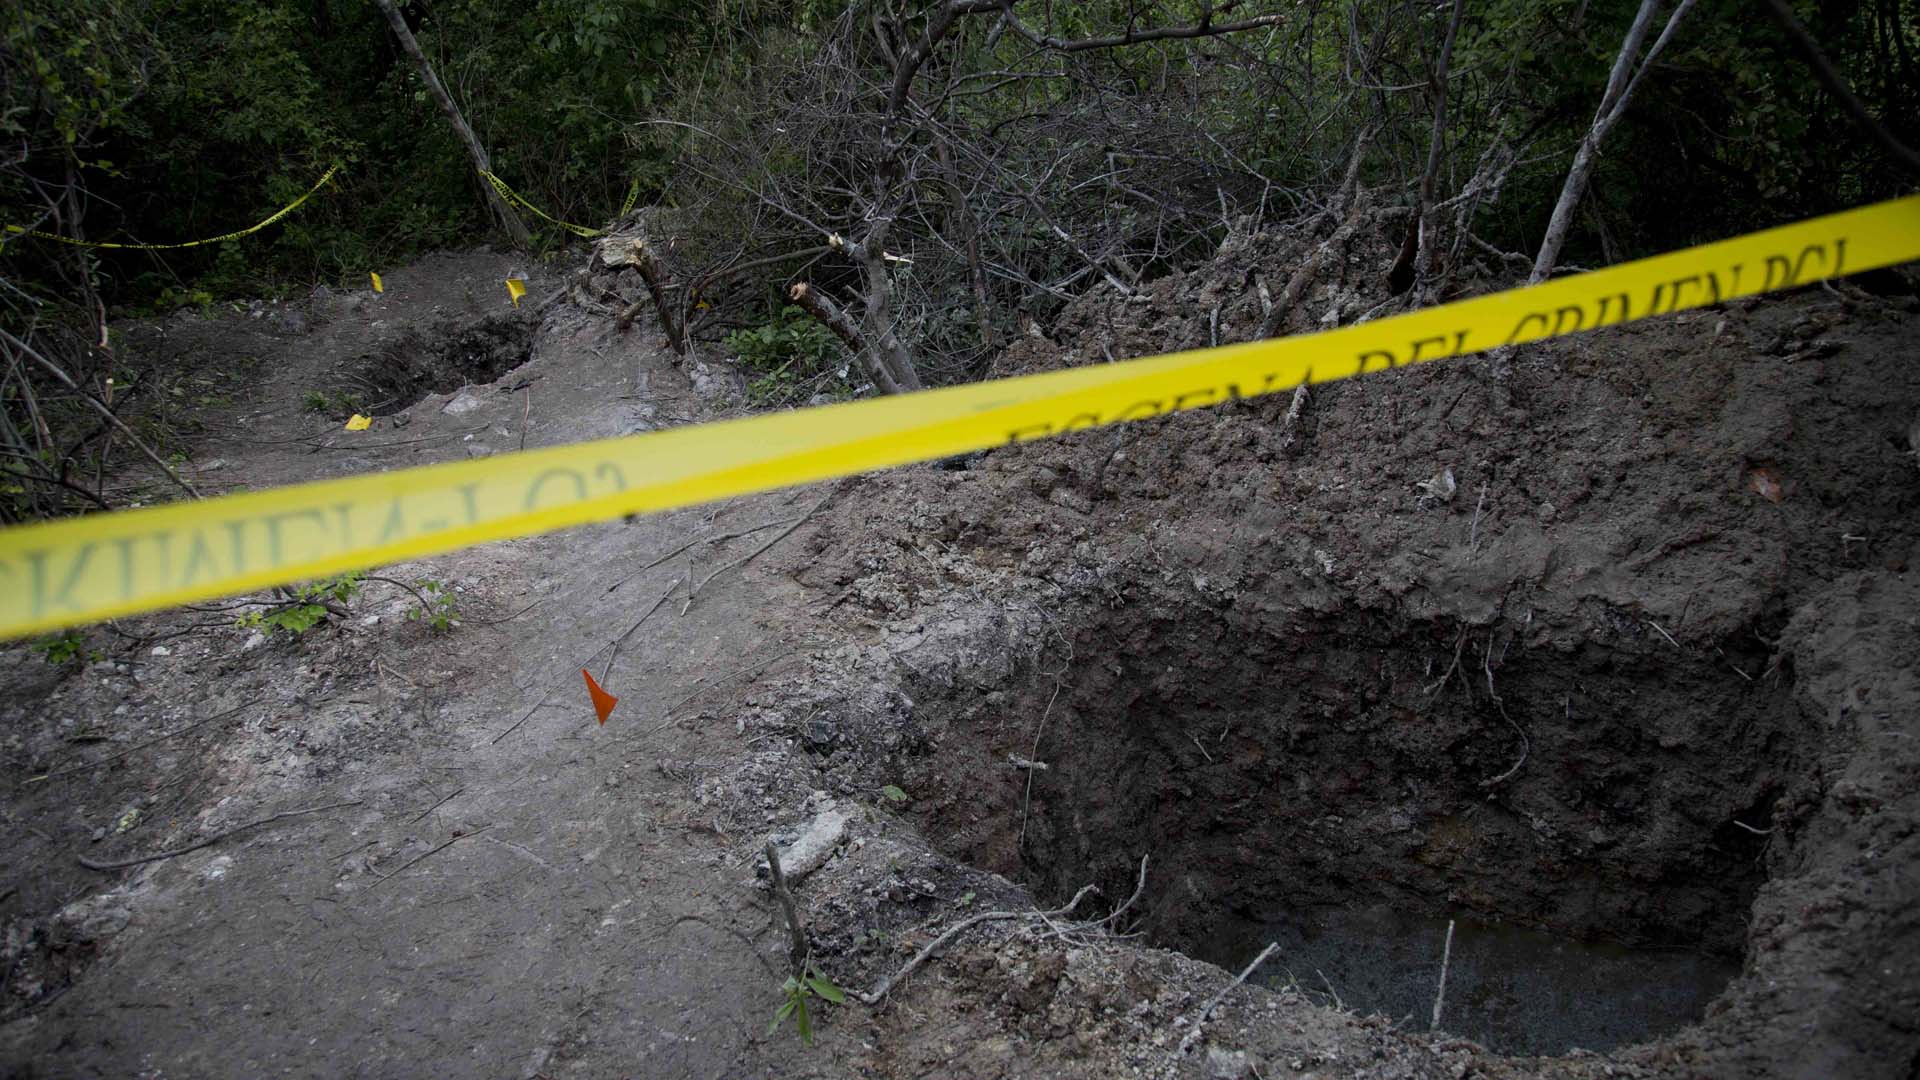  Son 32 los cuerpos encontrados en fosas clandestinas de Zitala